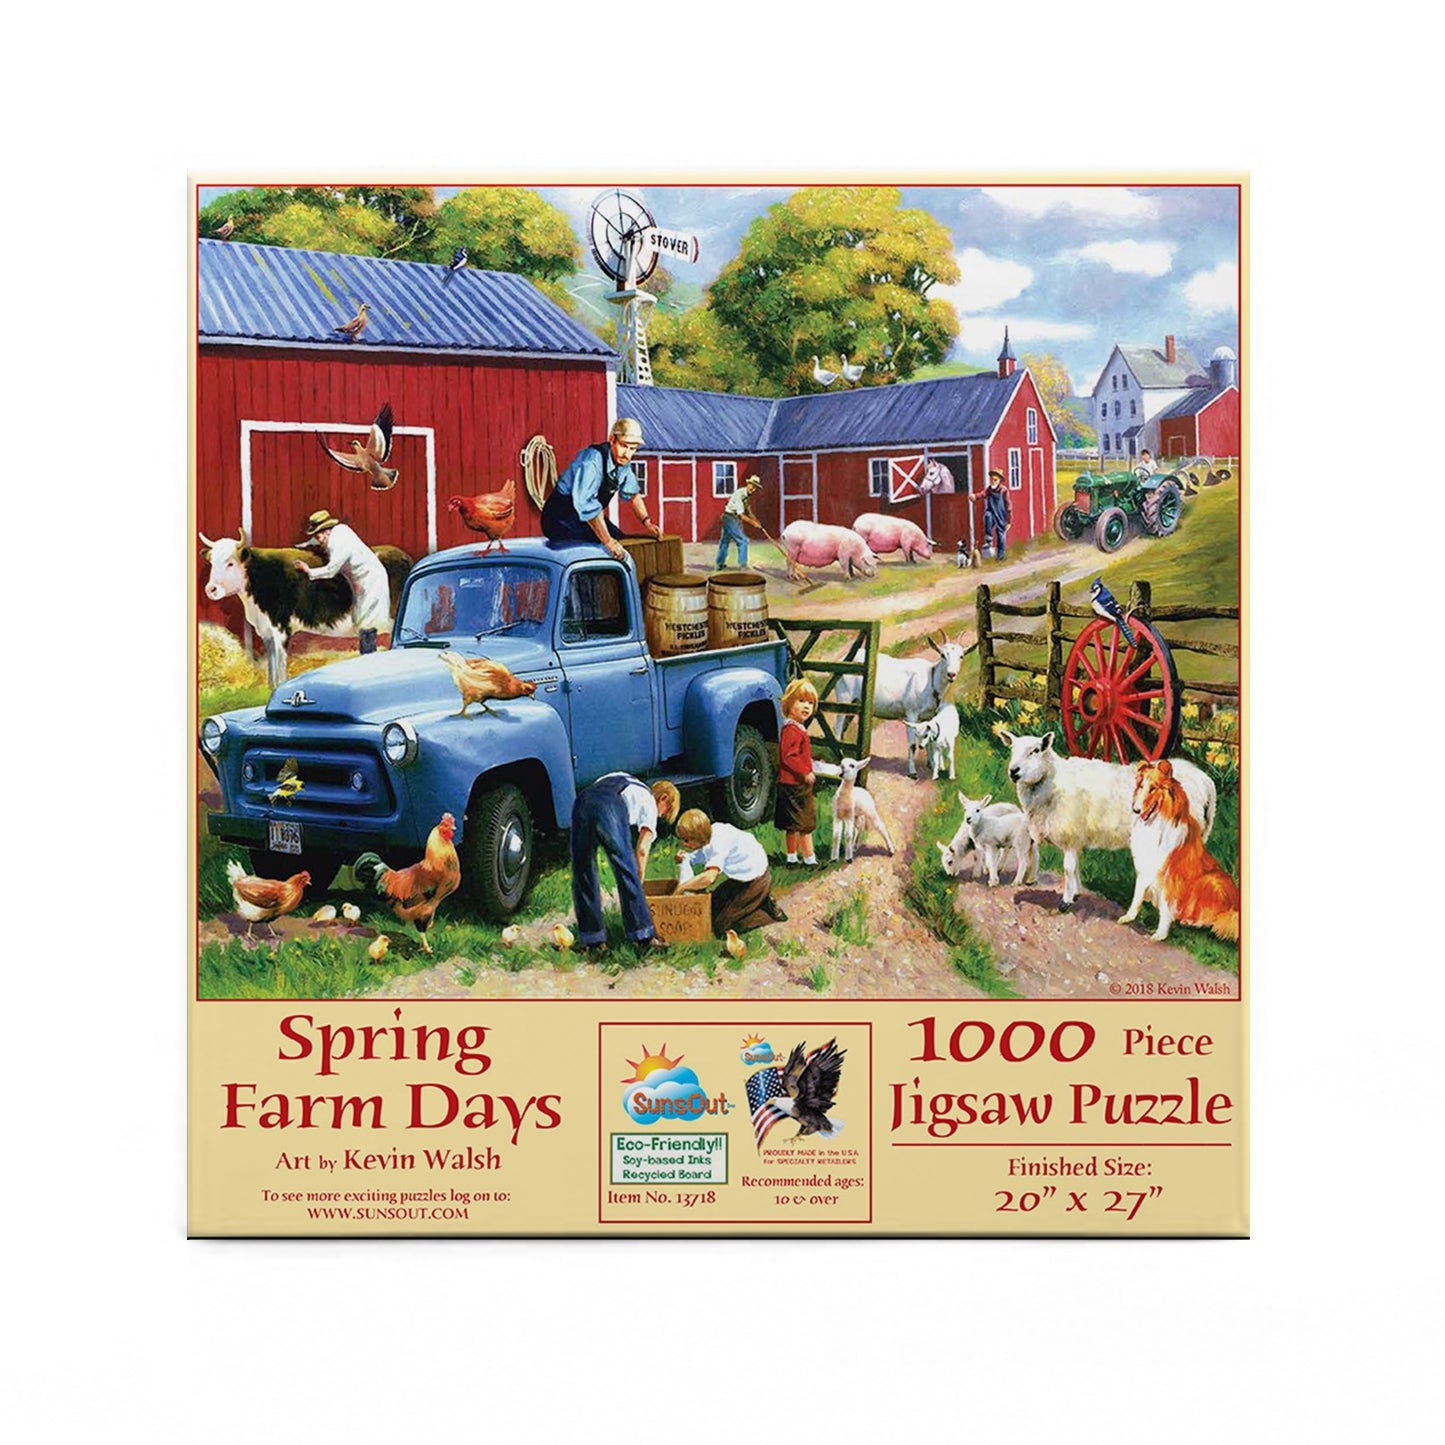 Spring Farm Days - 1000 Piece Jigsaw Puzzle